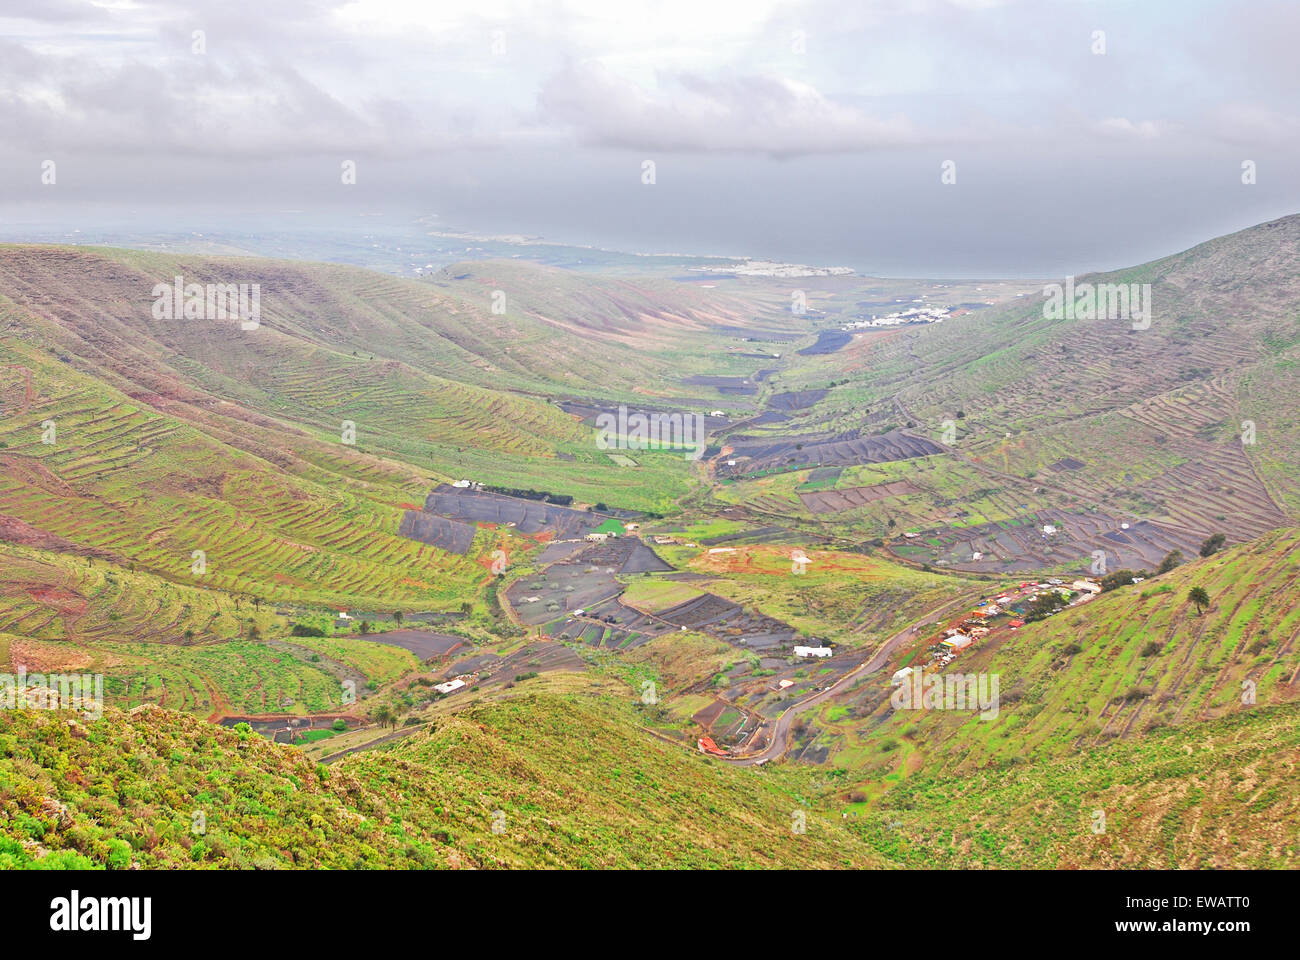 Lanzarote, Kanarische Inseln, Spanien. Ein Blick von einem Berg zu einem fruchtbaren, grünen Tal mit Plantagen auf den Hügeln und kleinen h Stockfoto